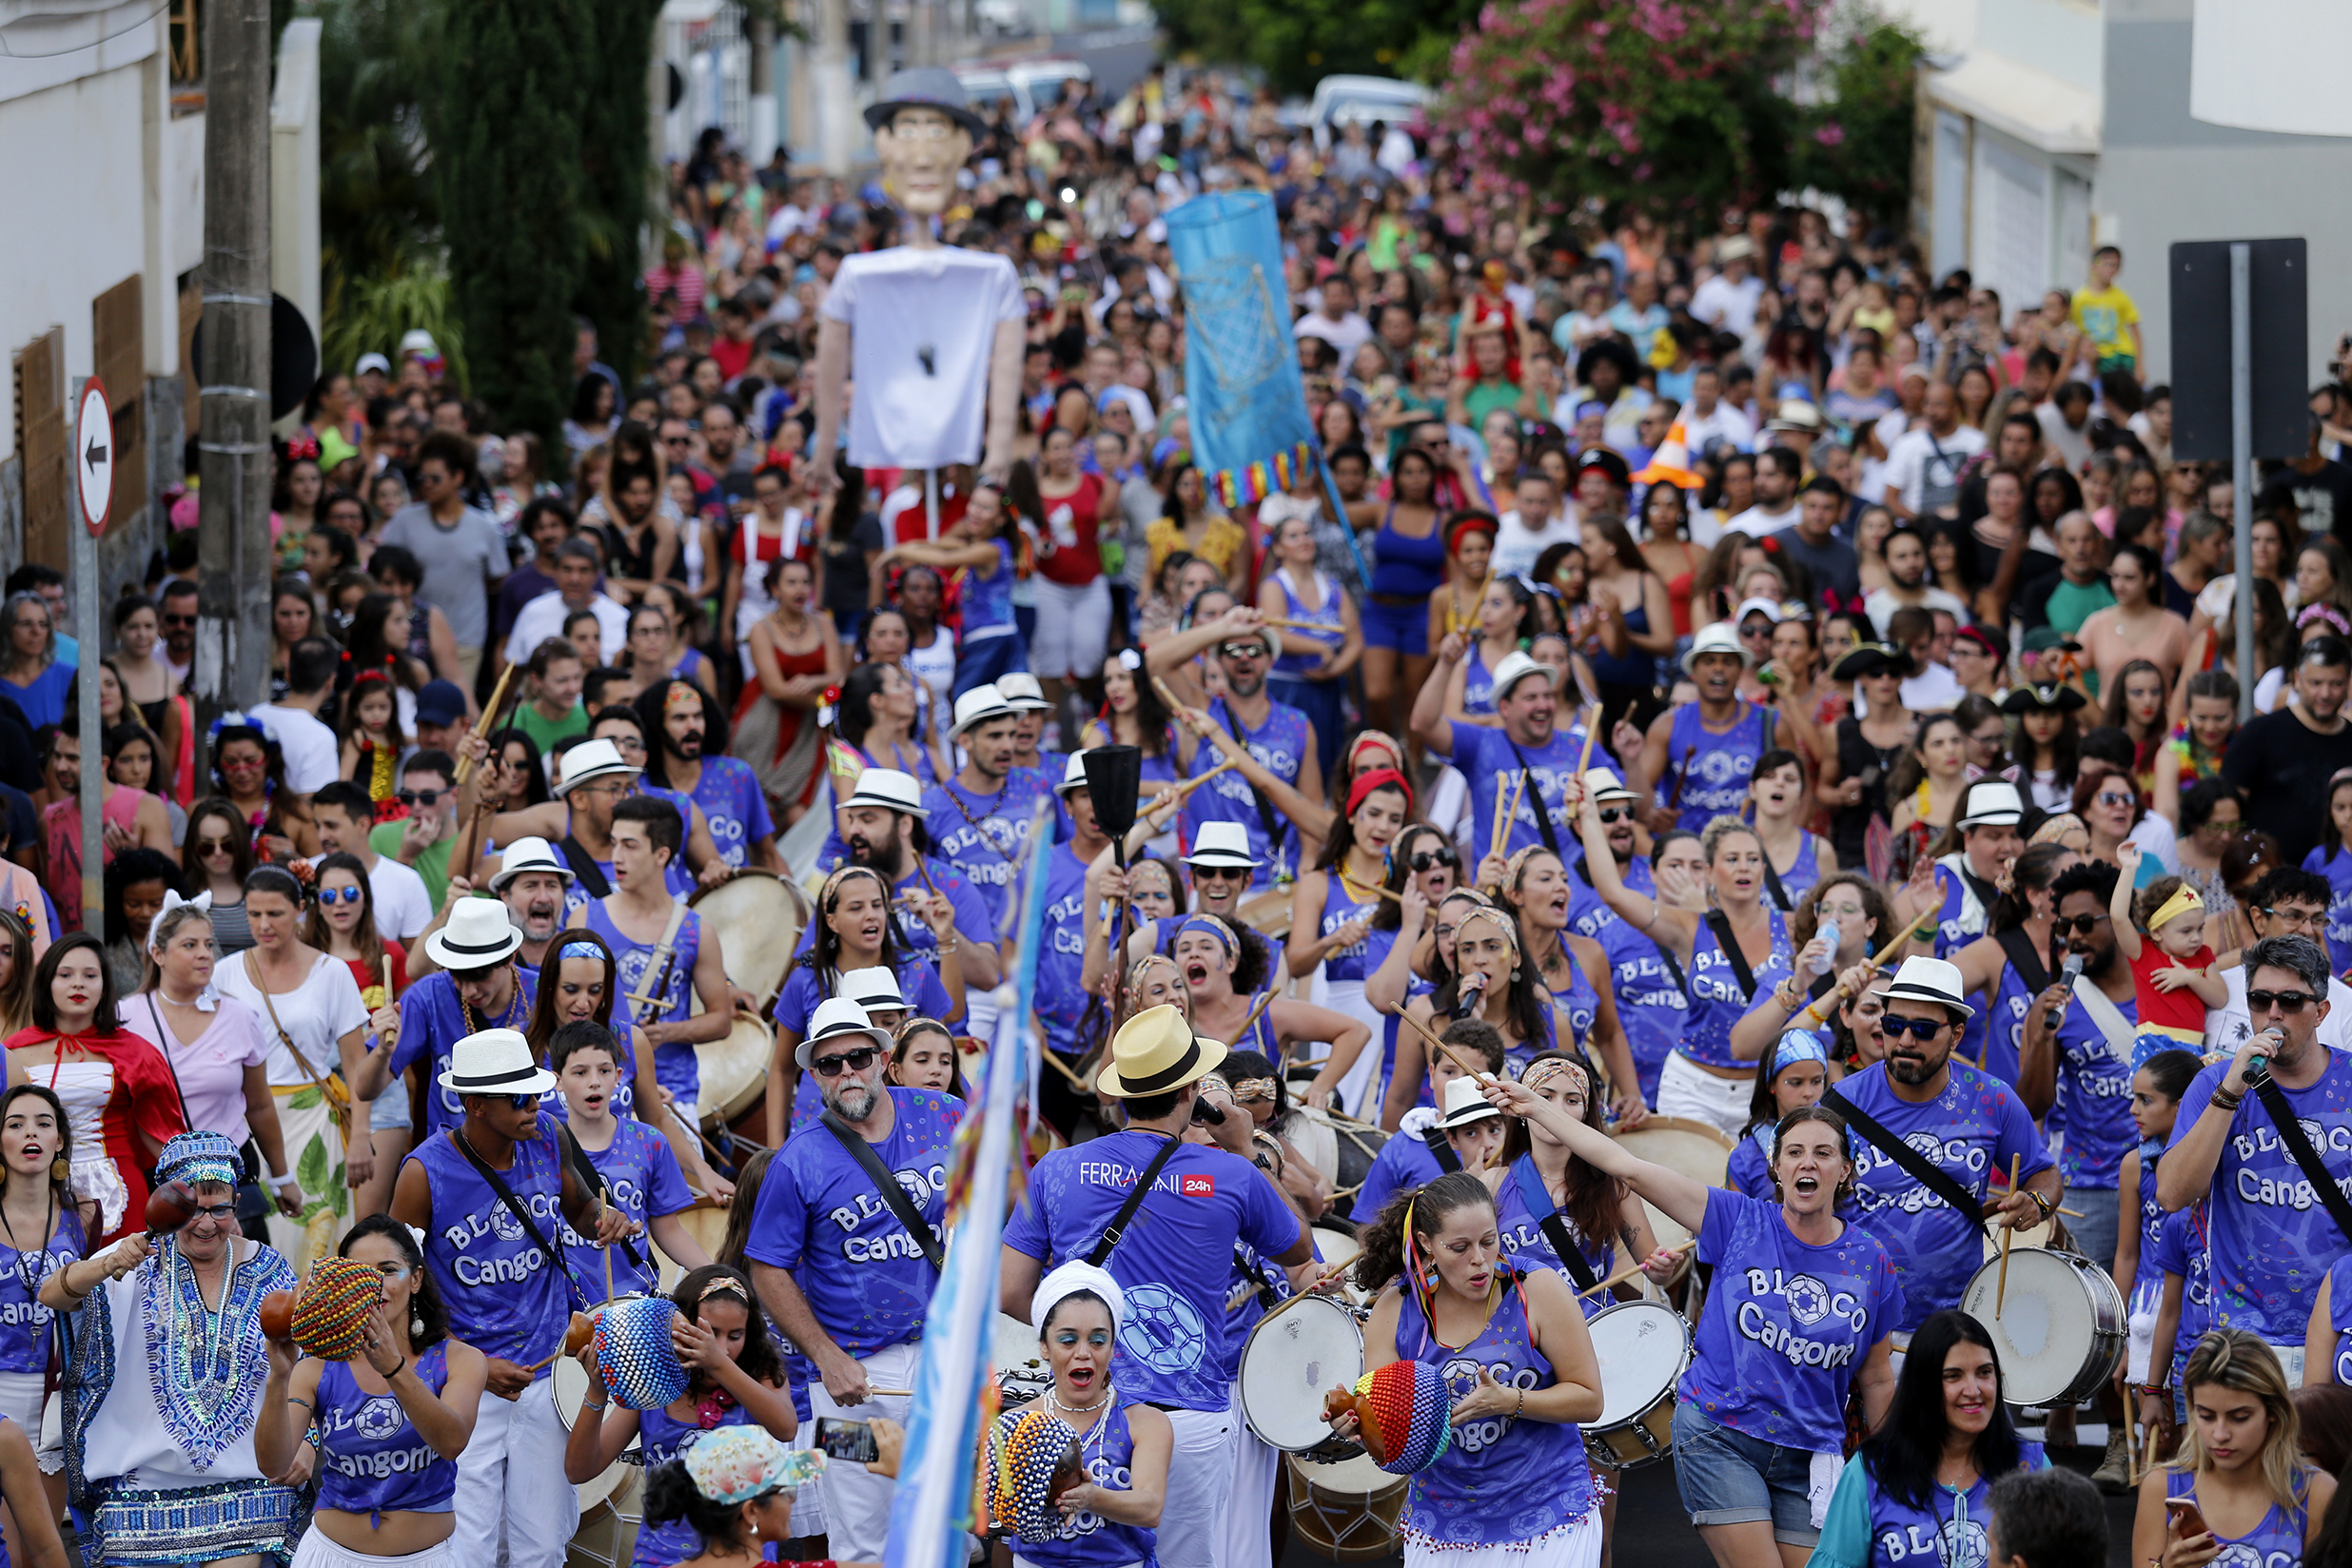 Cangoma reuniu milhares de pessoas nas ruas de Franca no Carnaval deste ano (Foto: Marcos Limonti)